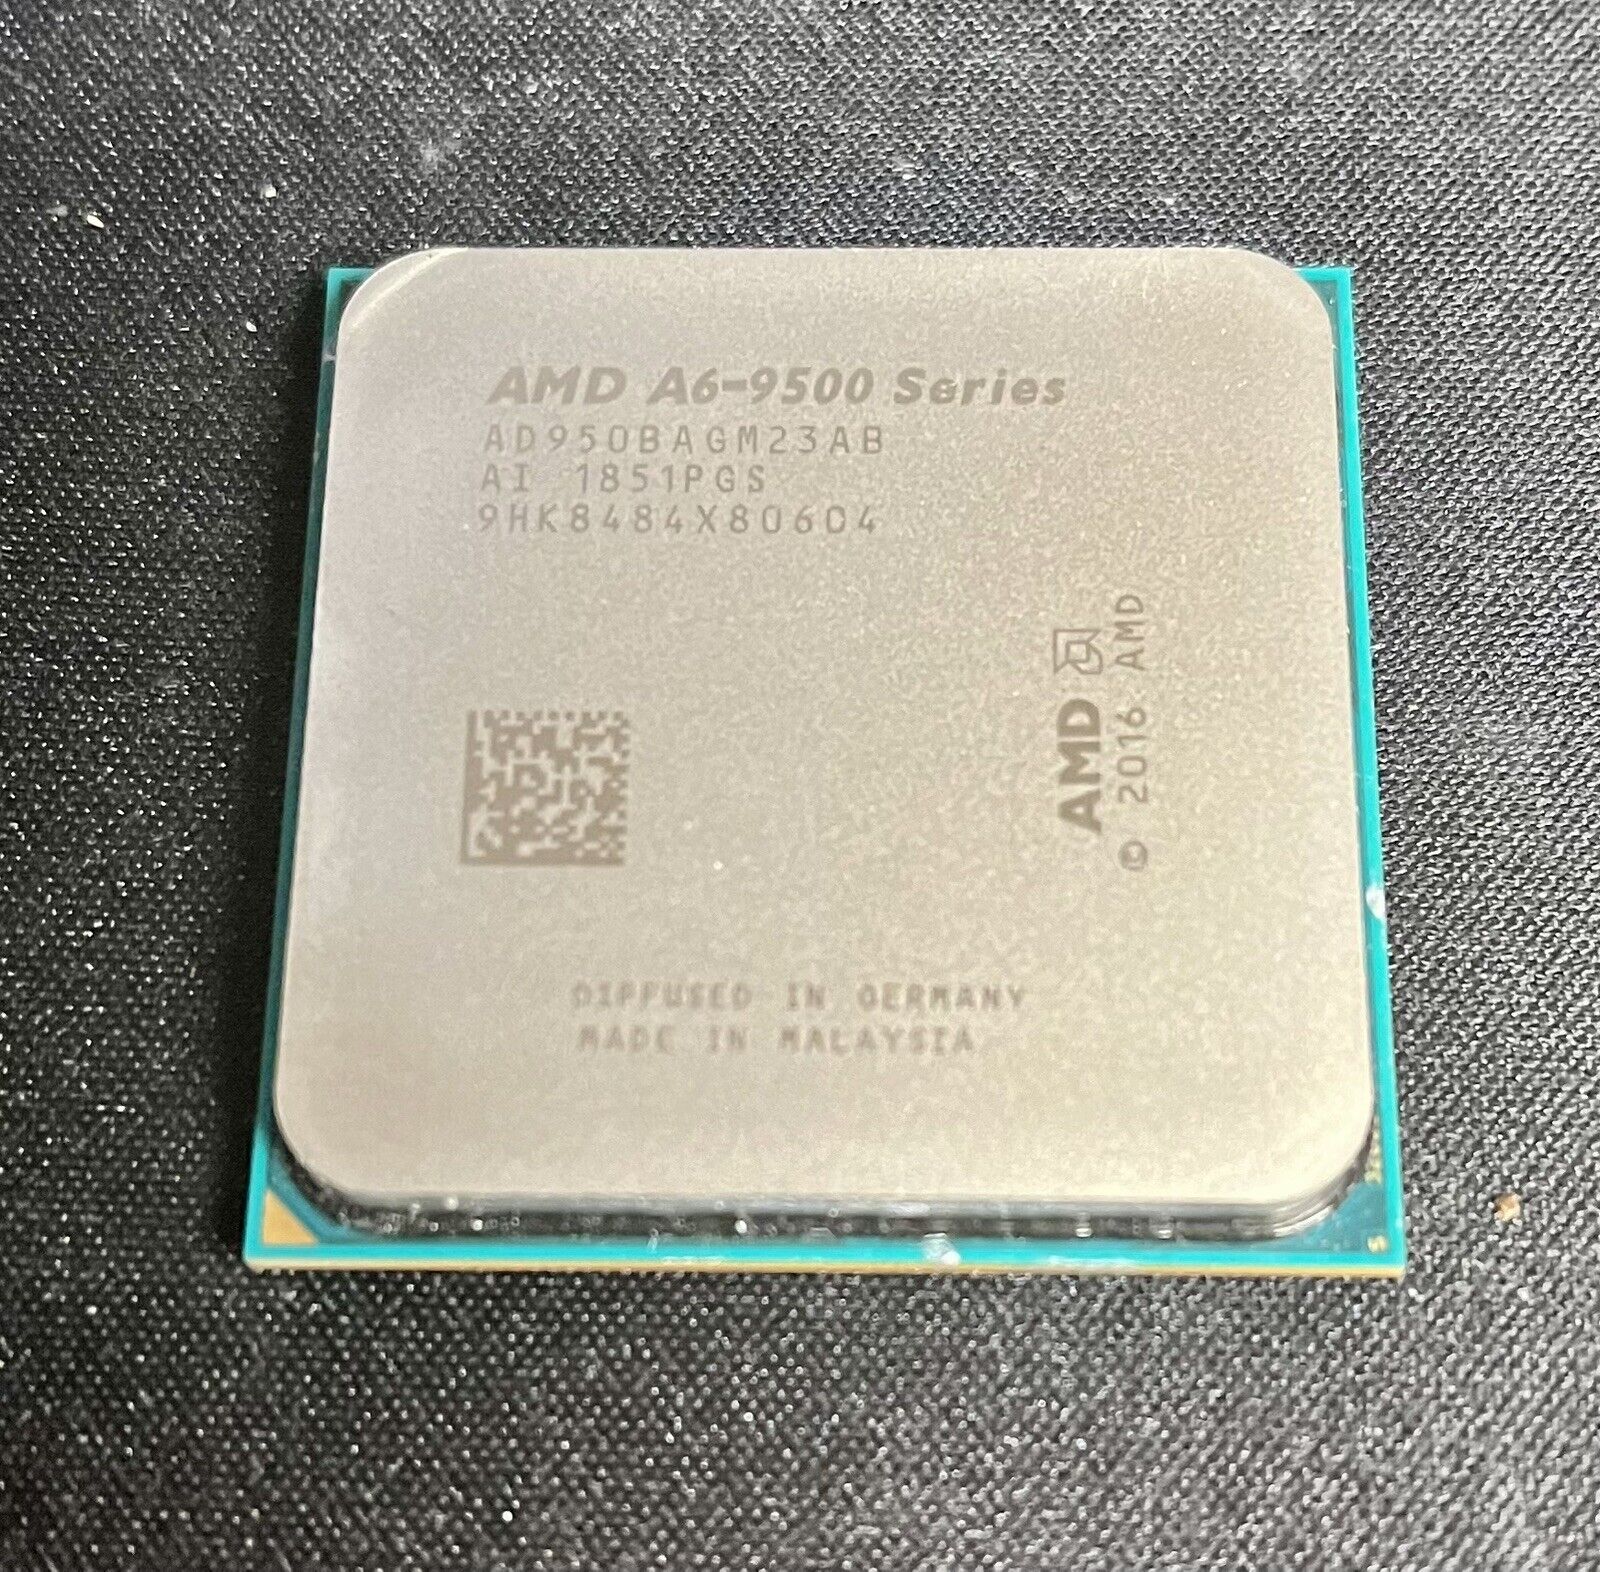 AMD A6-9500 Series 3.5ghz Processor AD950BAGM23AB)